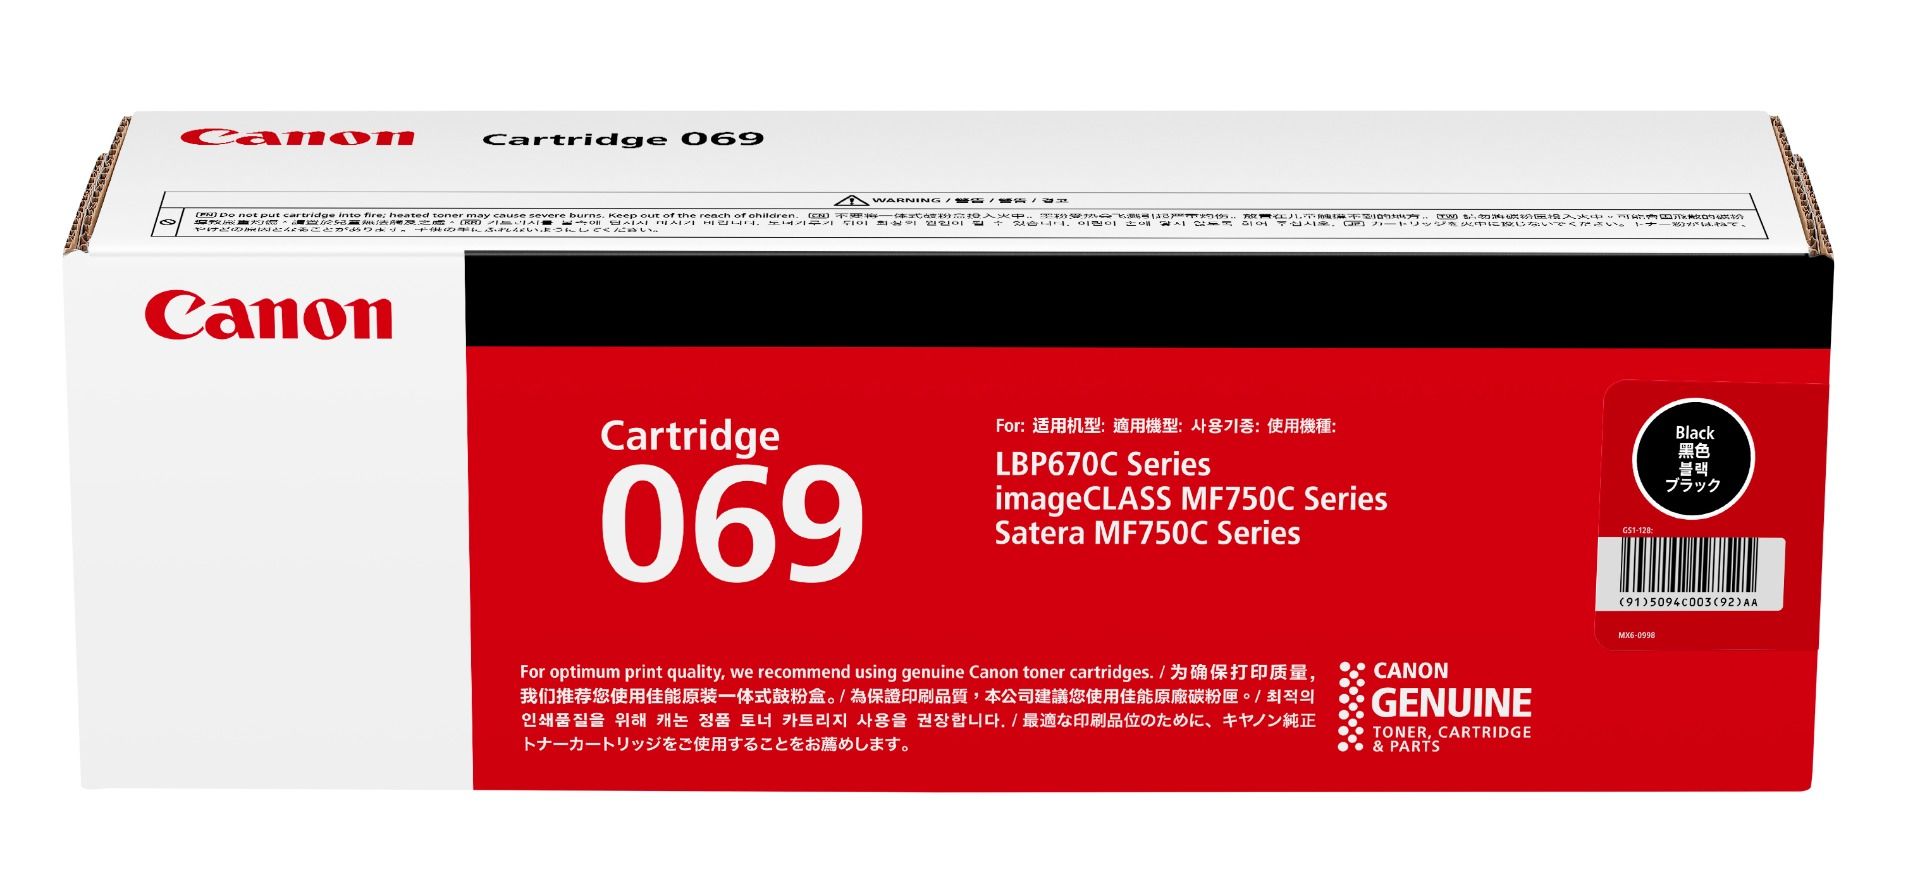 佳能 CANON Cartridge 黑色碳粉盒 約2,100頁 (ISO/IEC19798)/個 069 BK